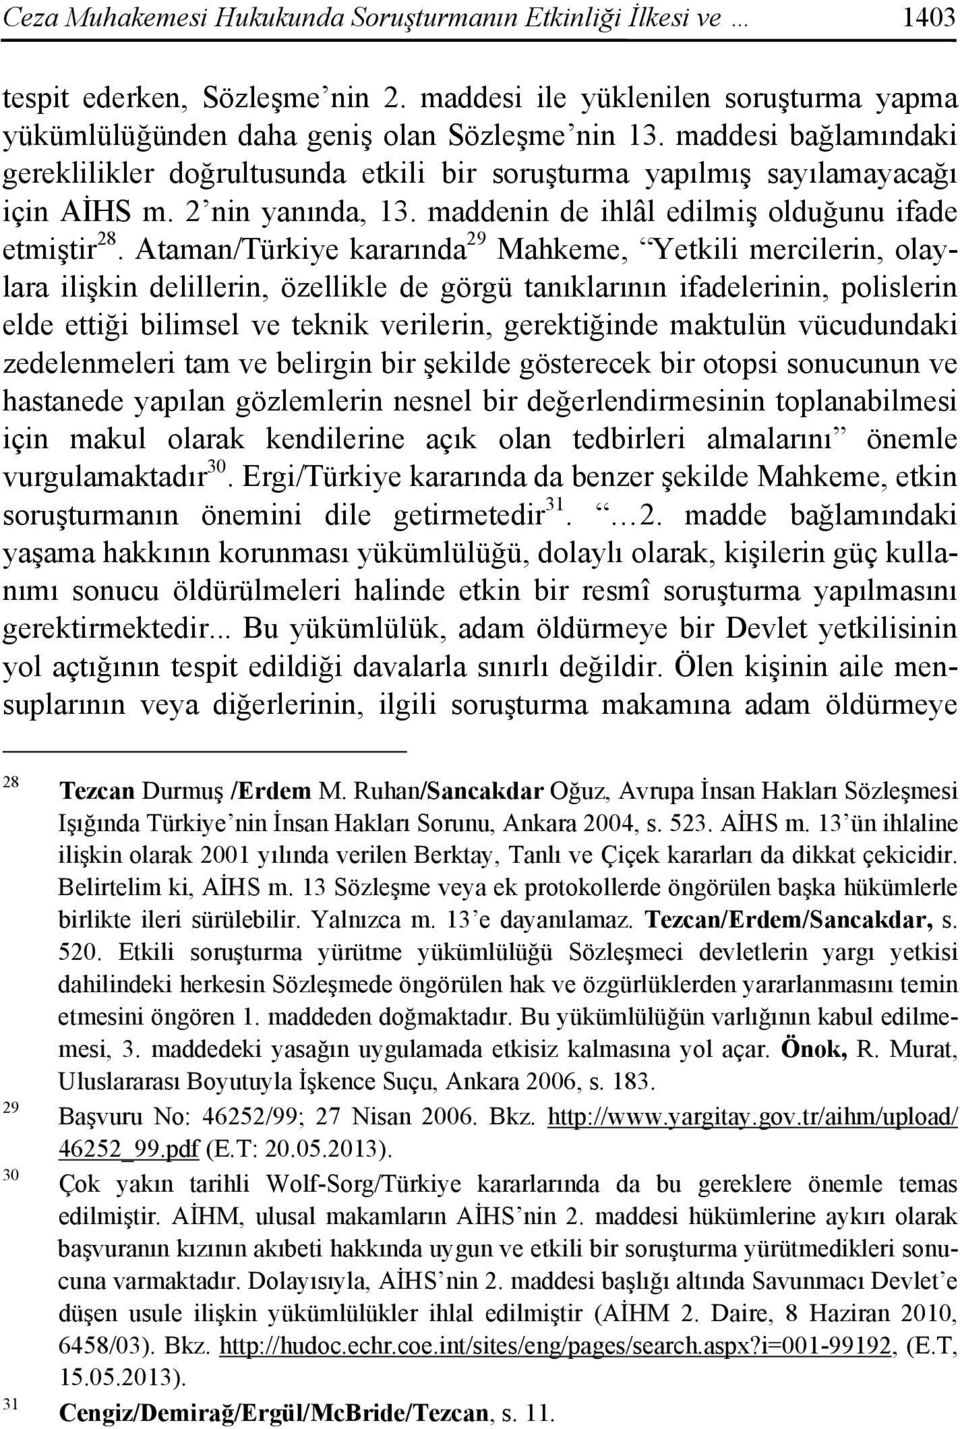 Ataman/Türkiye kararında 29 Mahkeme, Yetkili mercilerin, olaylara ilişkin delillerin, özellikle de görgü tanıklarının ifadelerinin, polislerin elde ettiği bilimsel ve teknik verilerin, gerektiğinde